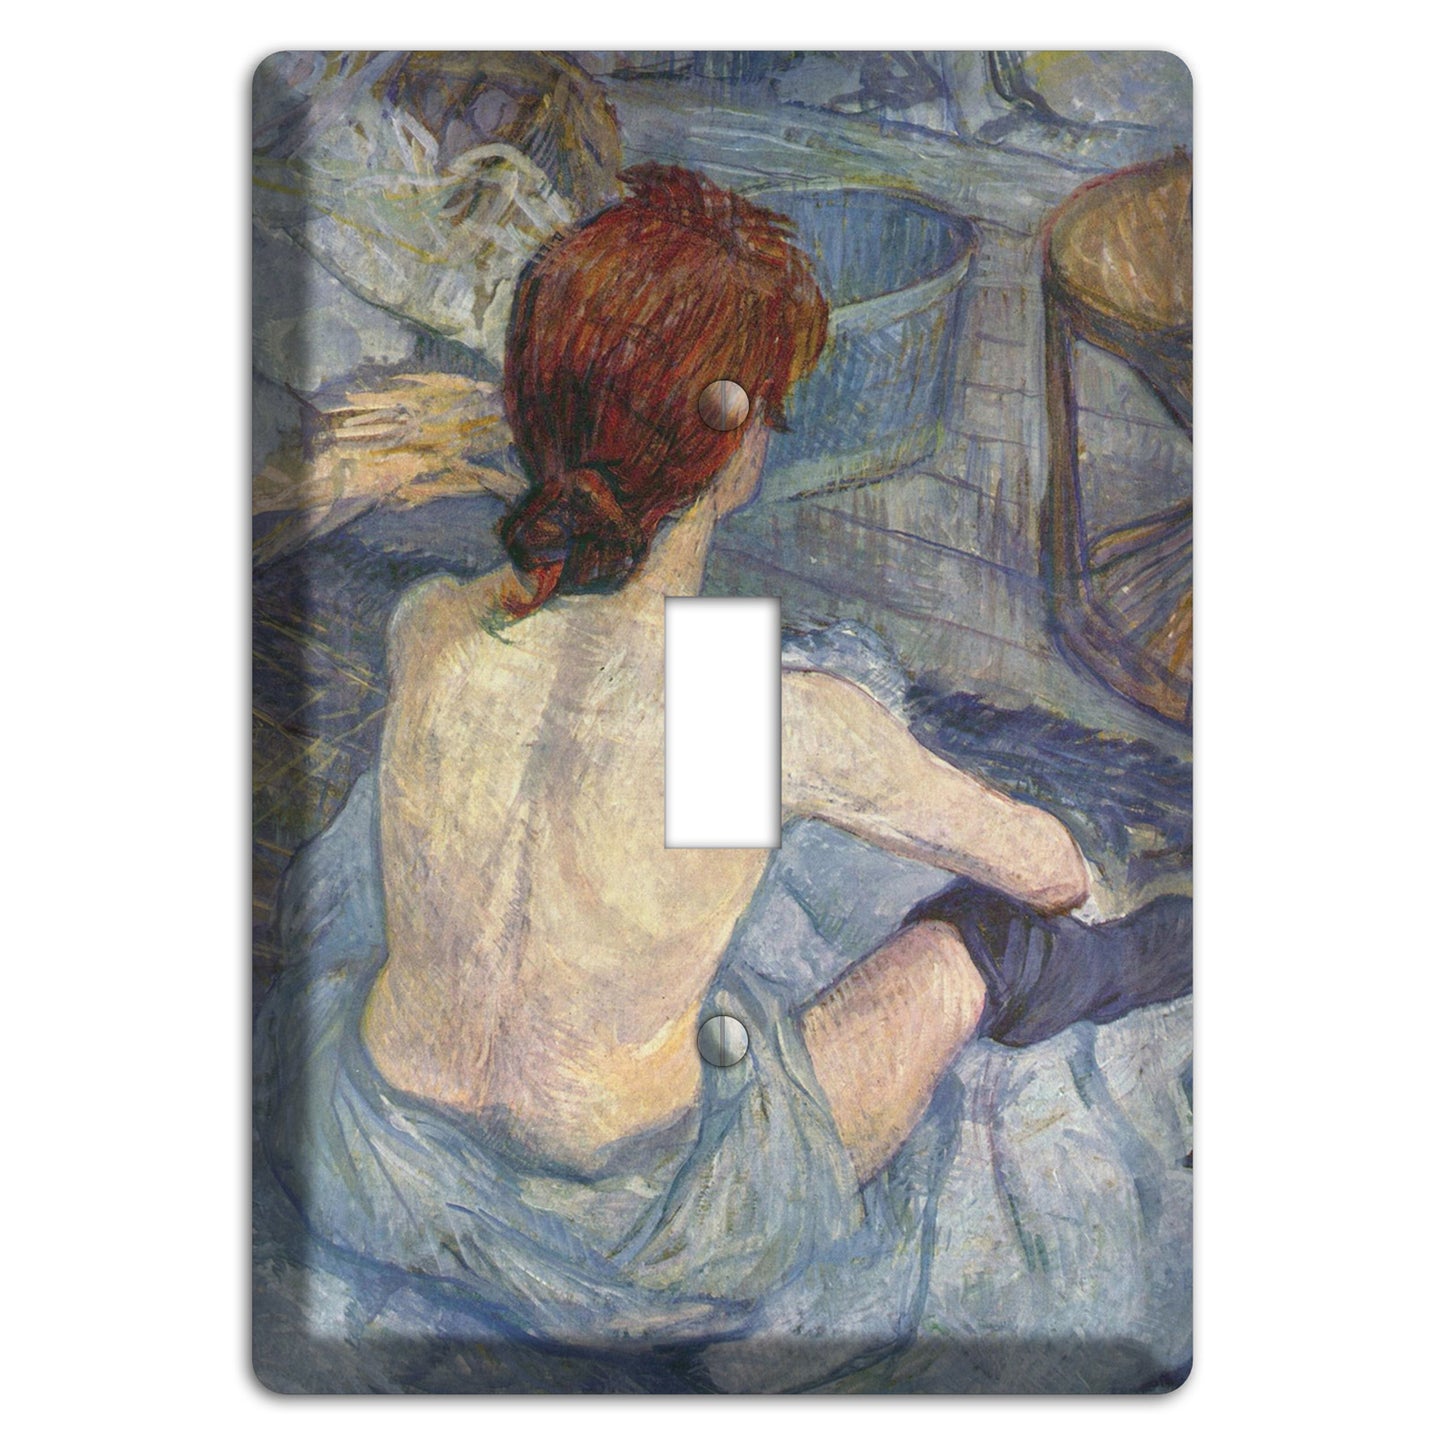 Toulouse-Lautrec 3 Cover Plates